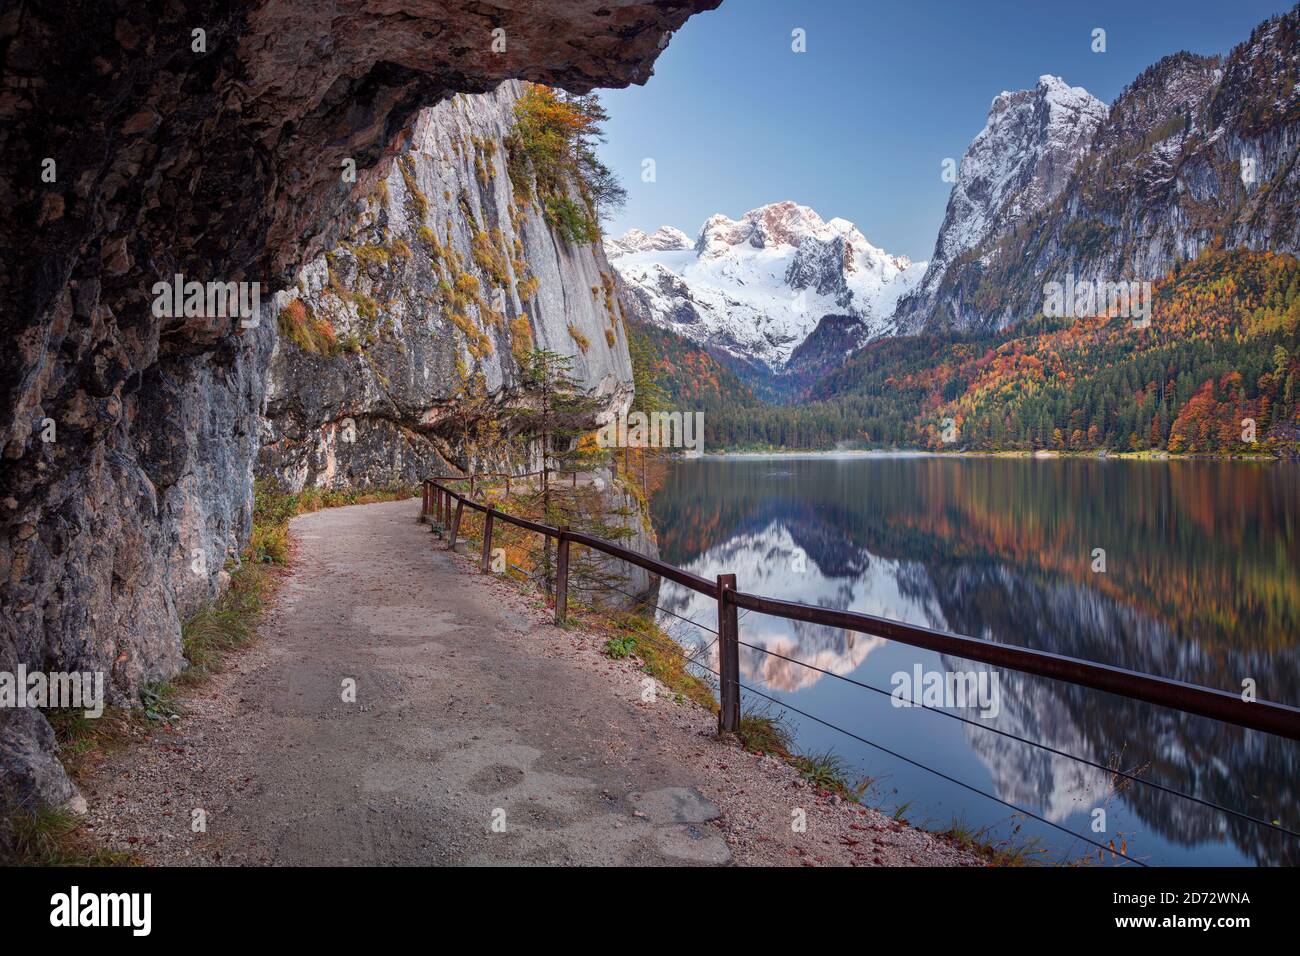 Gosausee, Alpes européennes. Image paysage de Gosausee, Autriche situé dans les Alpes européennes au coucher du soleil d'automne. Banque D'Images